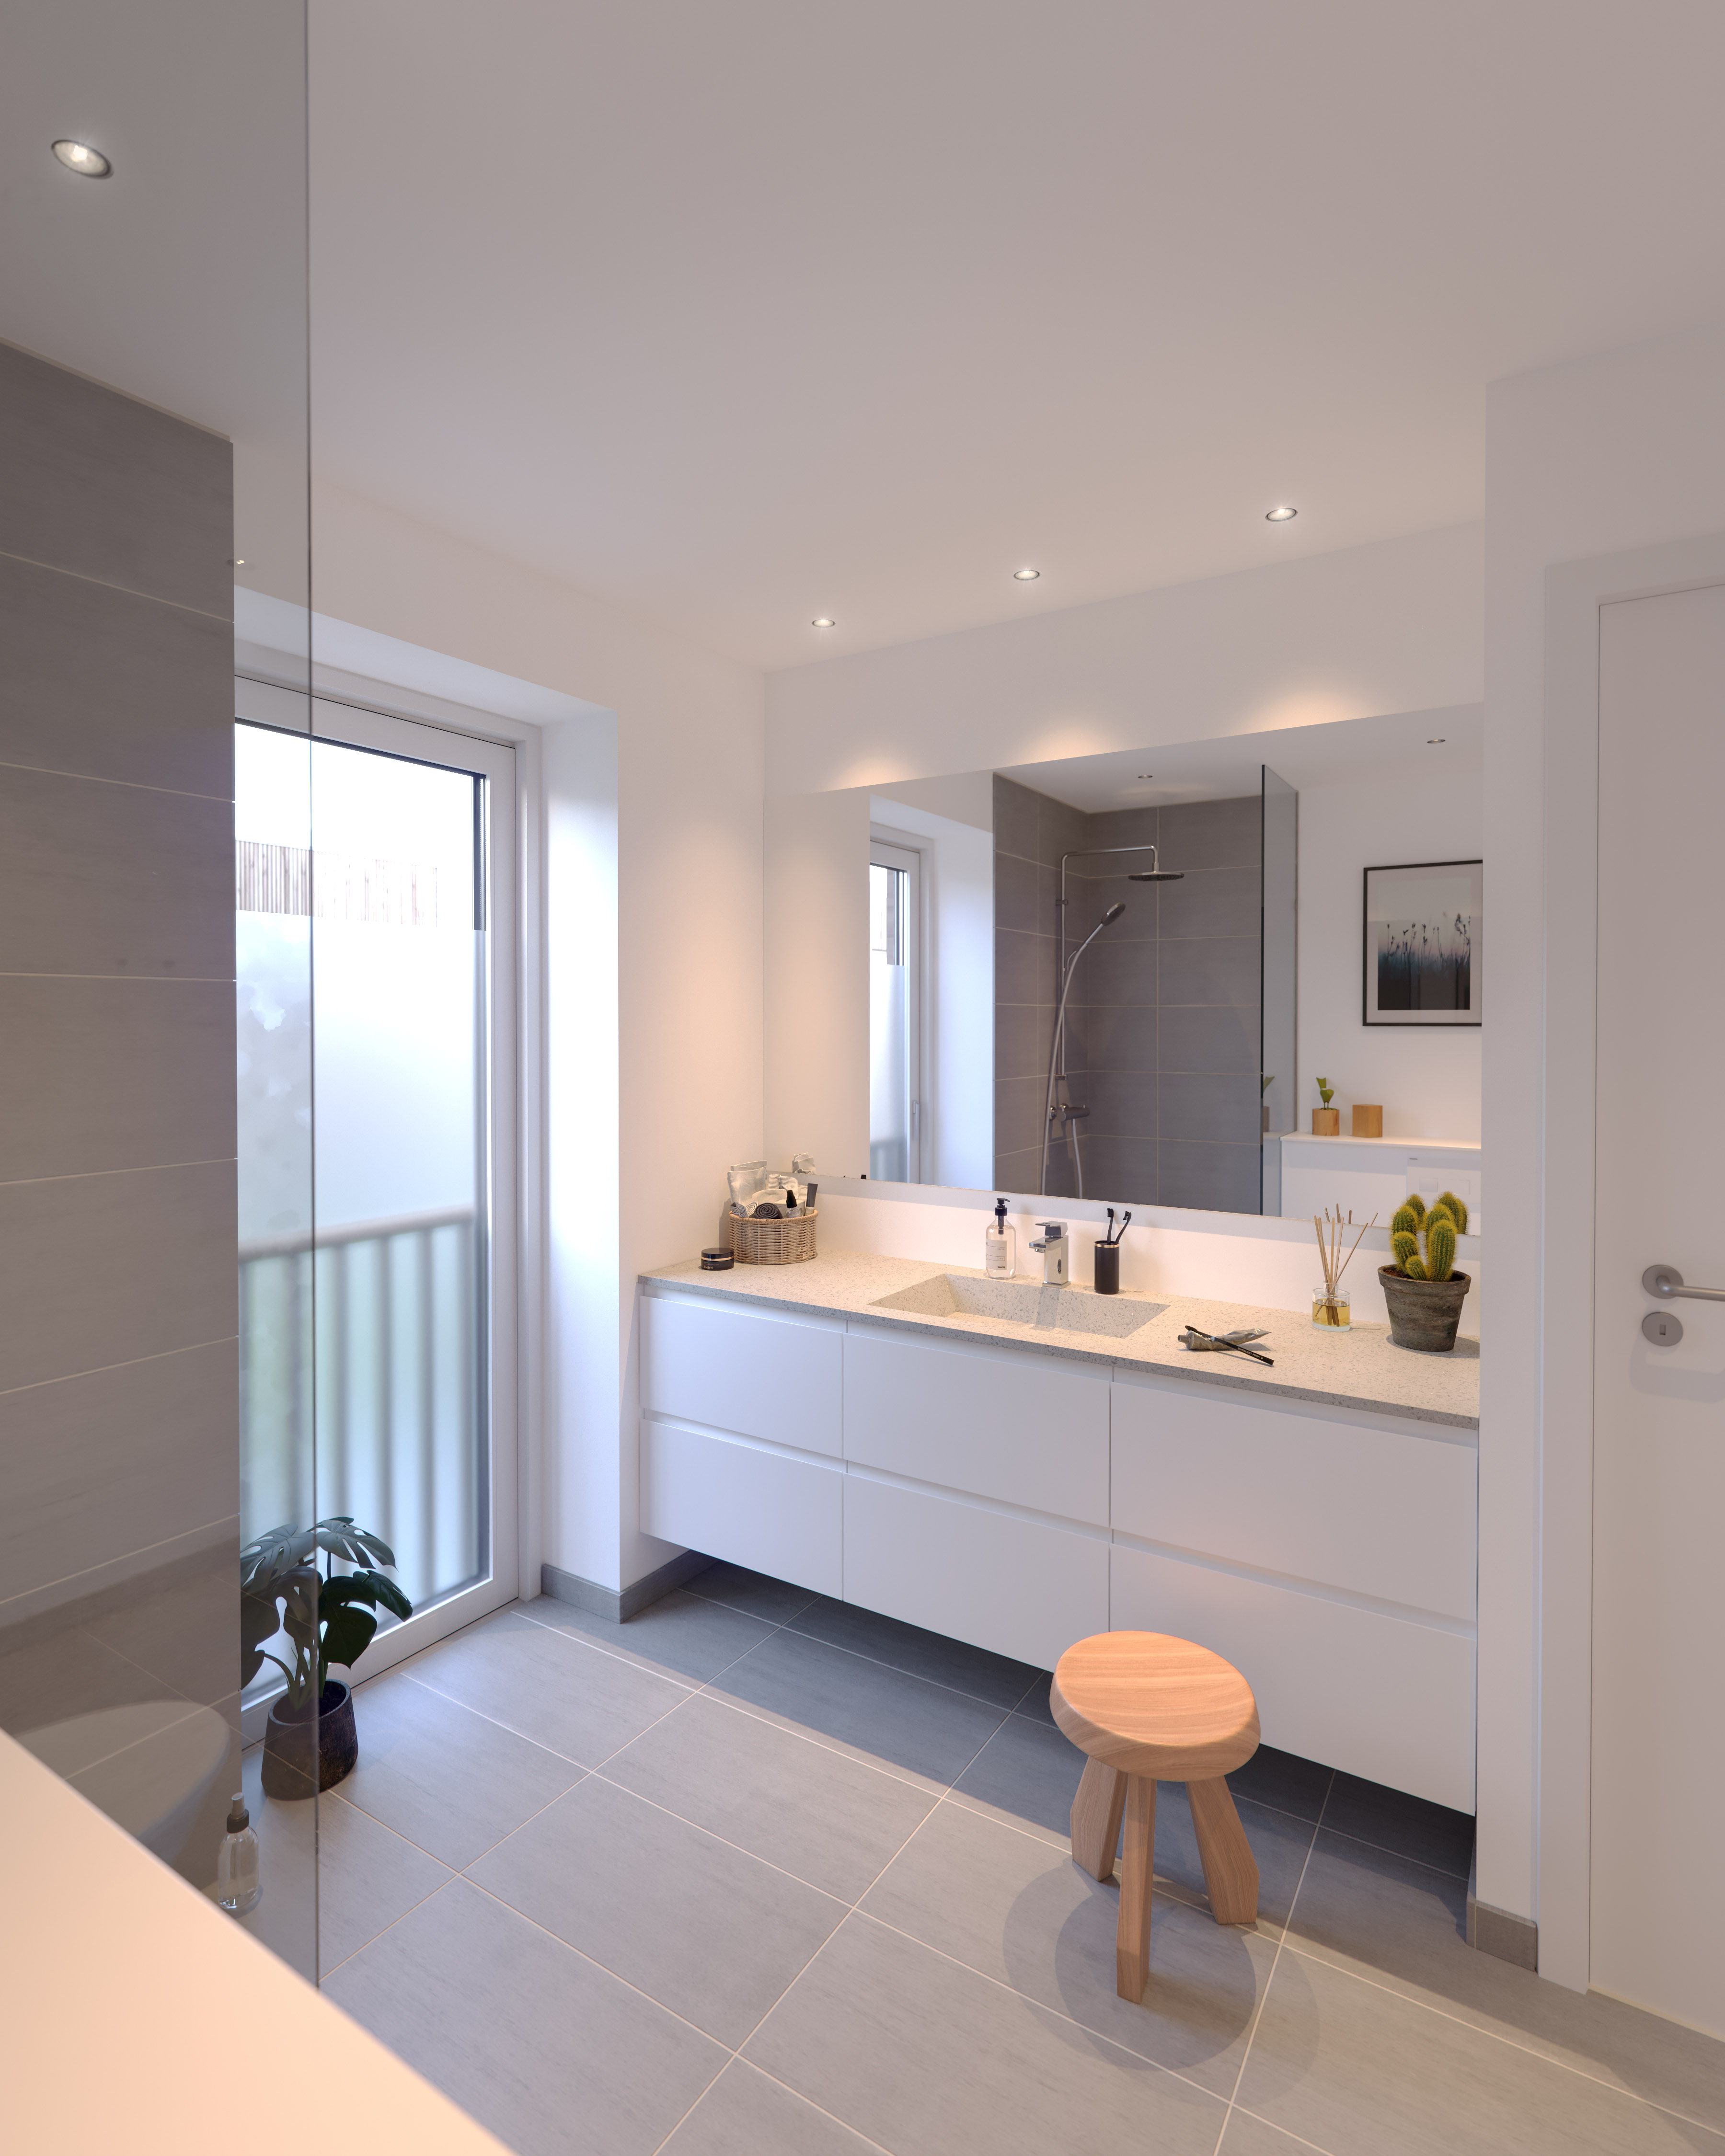 bolig interiør design projektsalg 3d visualisering arkitektur lejlighed køkken